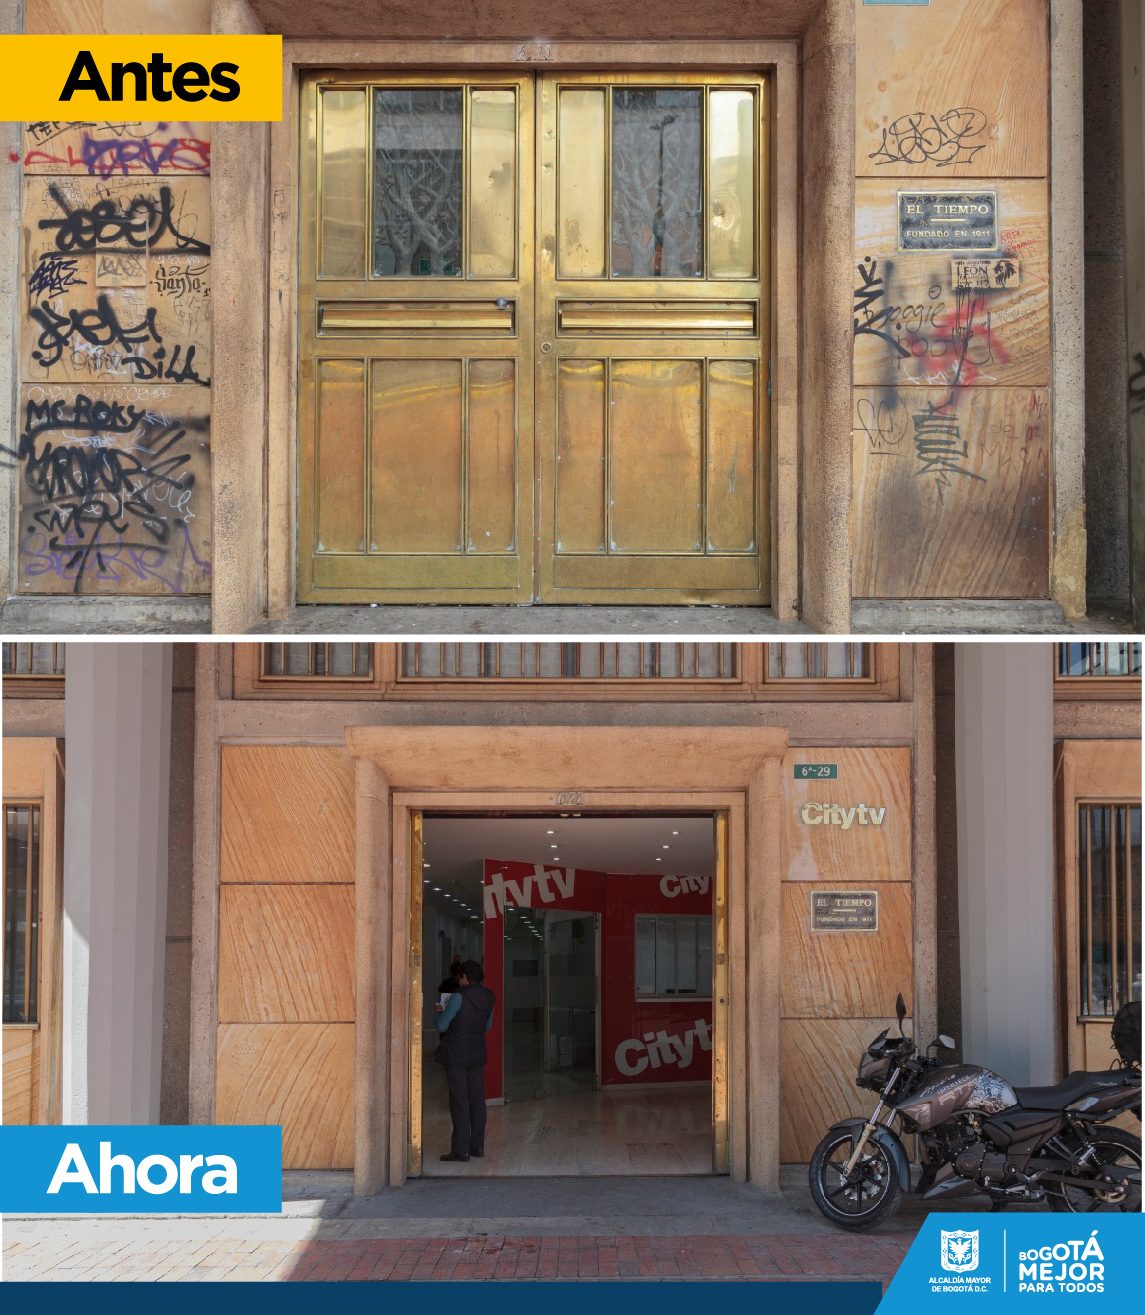 Con el programas el 'Patrimonio se luce', la Alcaldía ha transformado 1400 fachadas patrimoniales